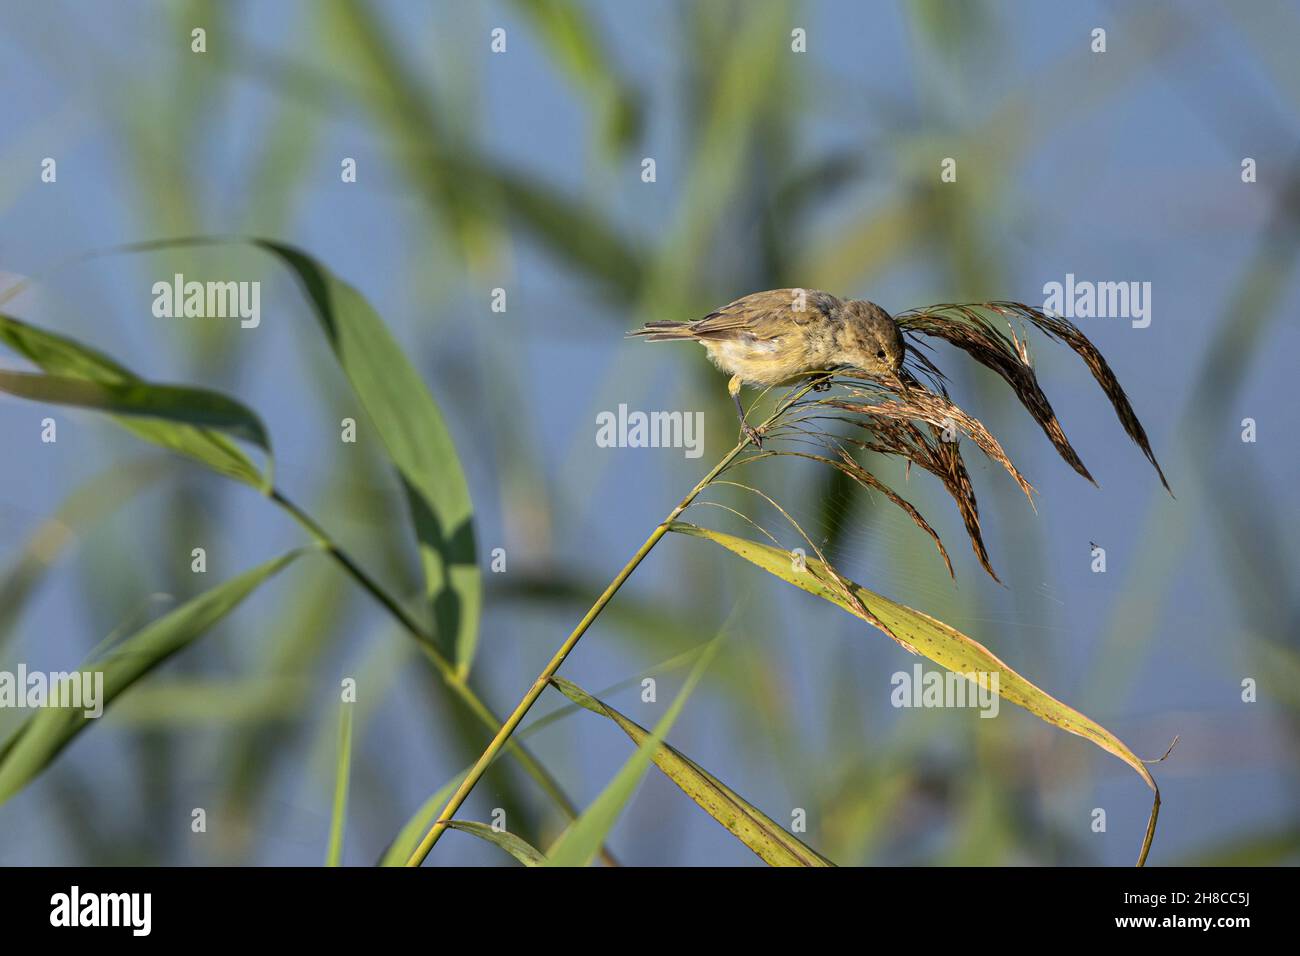 saule paruline (Phylloscopus trochilus), mue, mangeant des insectes de l'araignée web , Allemagne, Bavière Banque D'Images